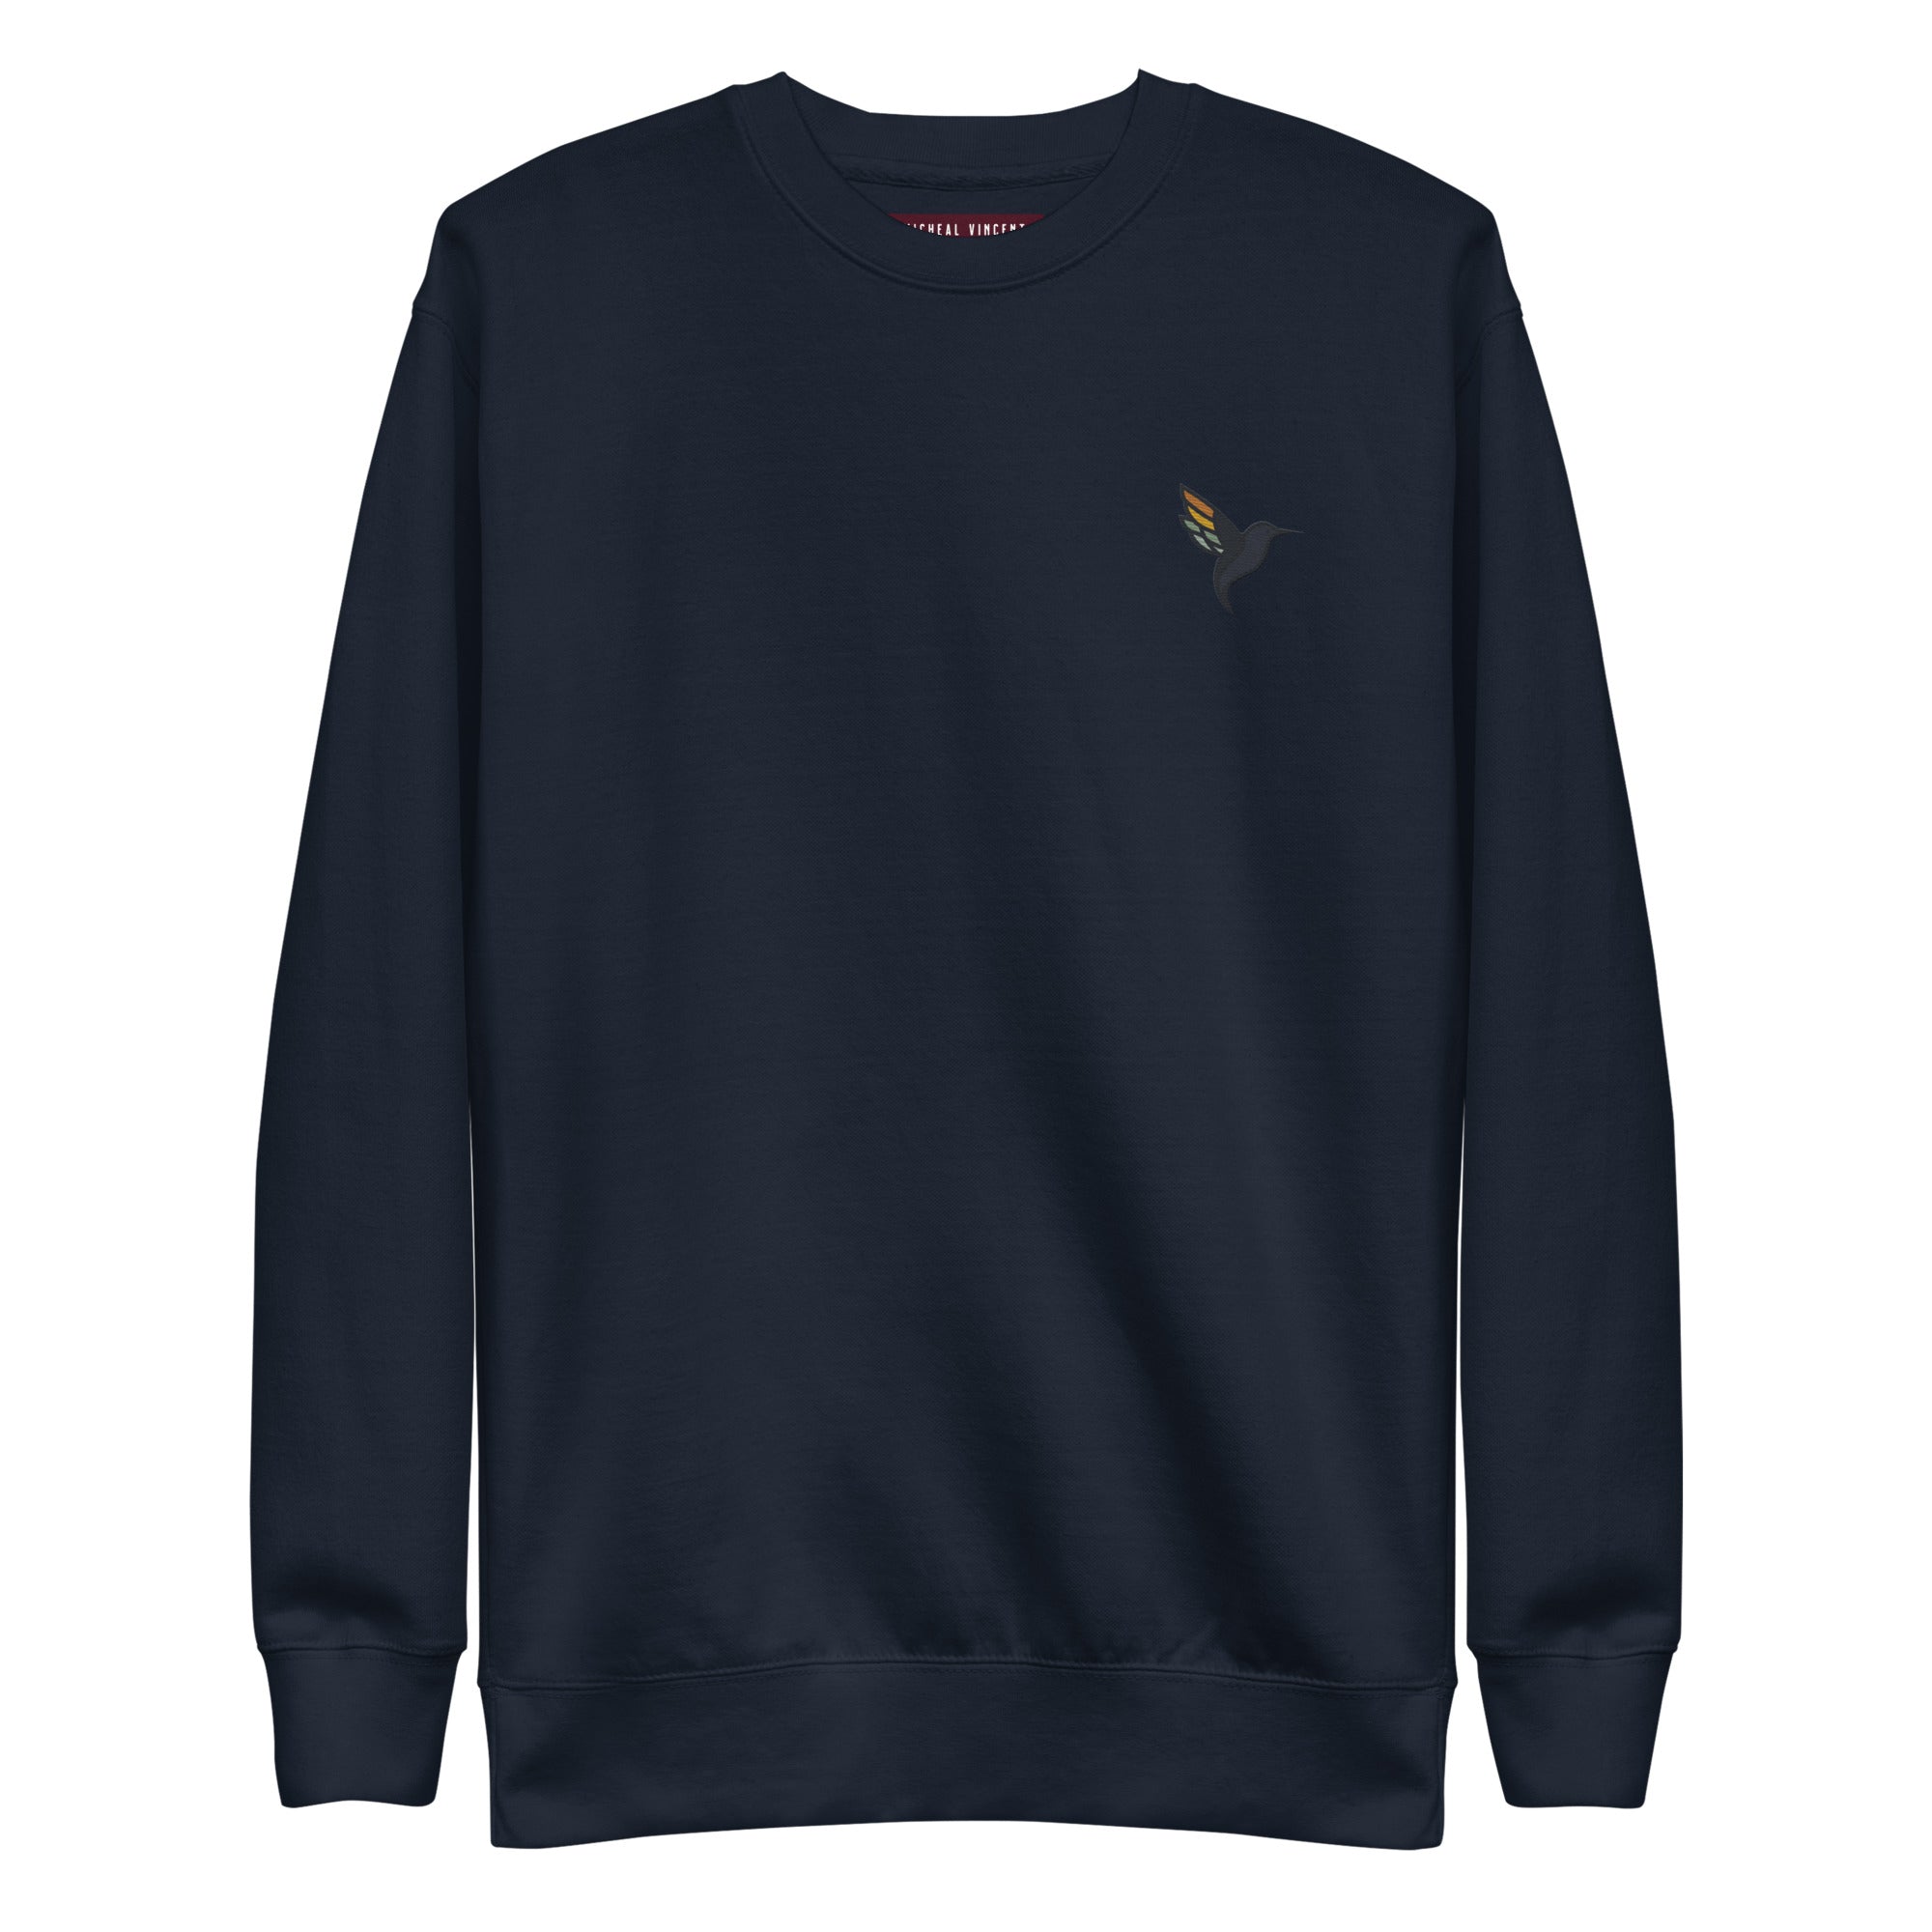 unisex-premium-sweatshirt-navy-blazer-front-652f12197dc56.jpg